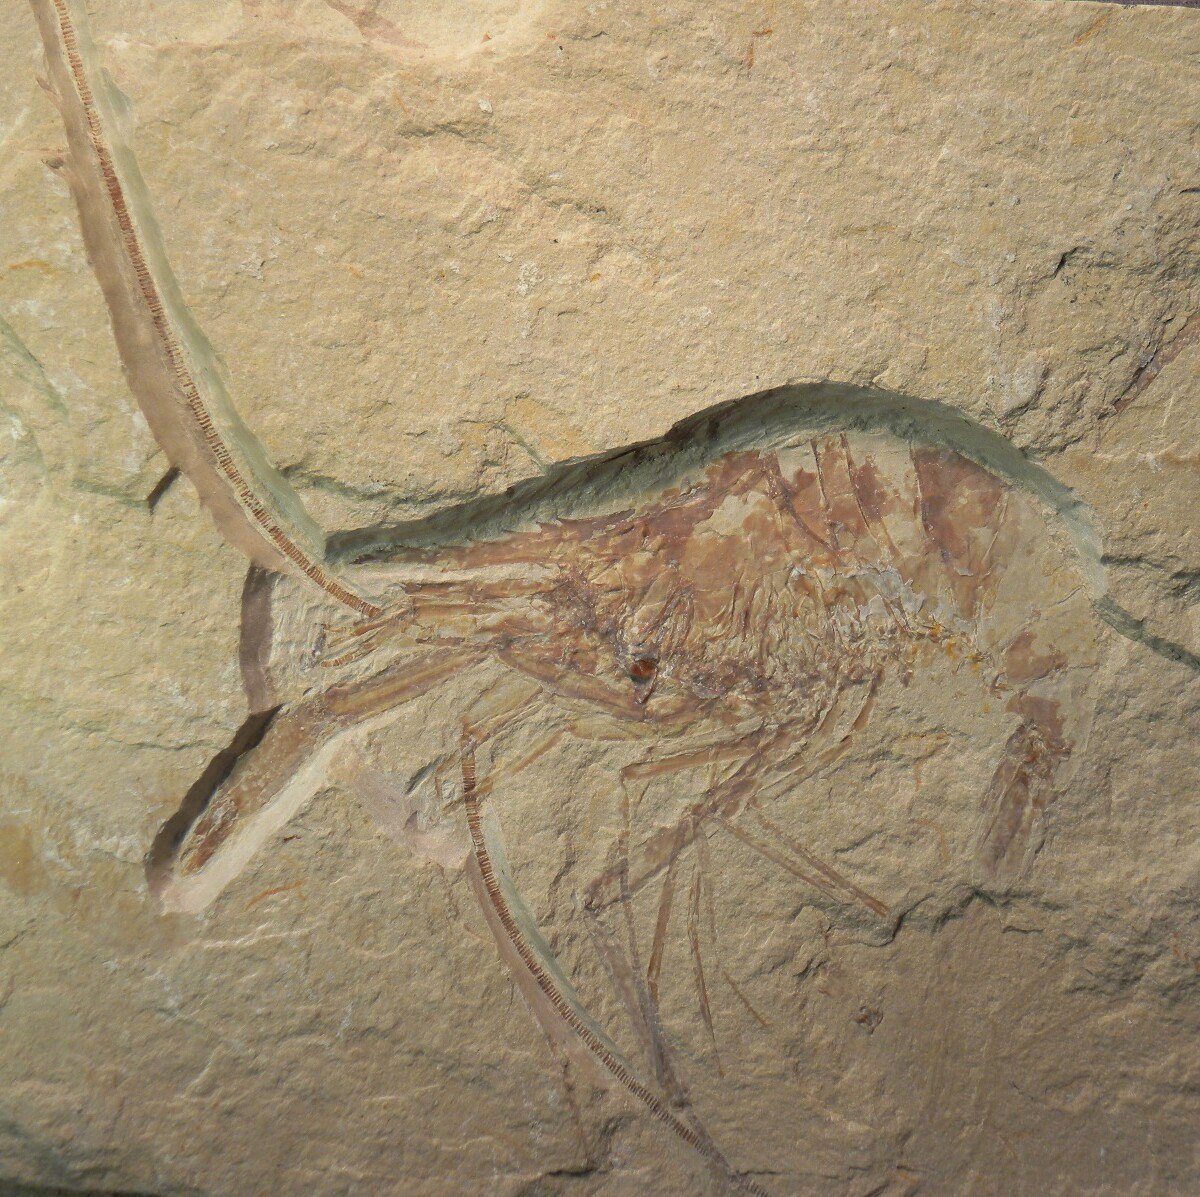 Shrimp Fossils